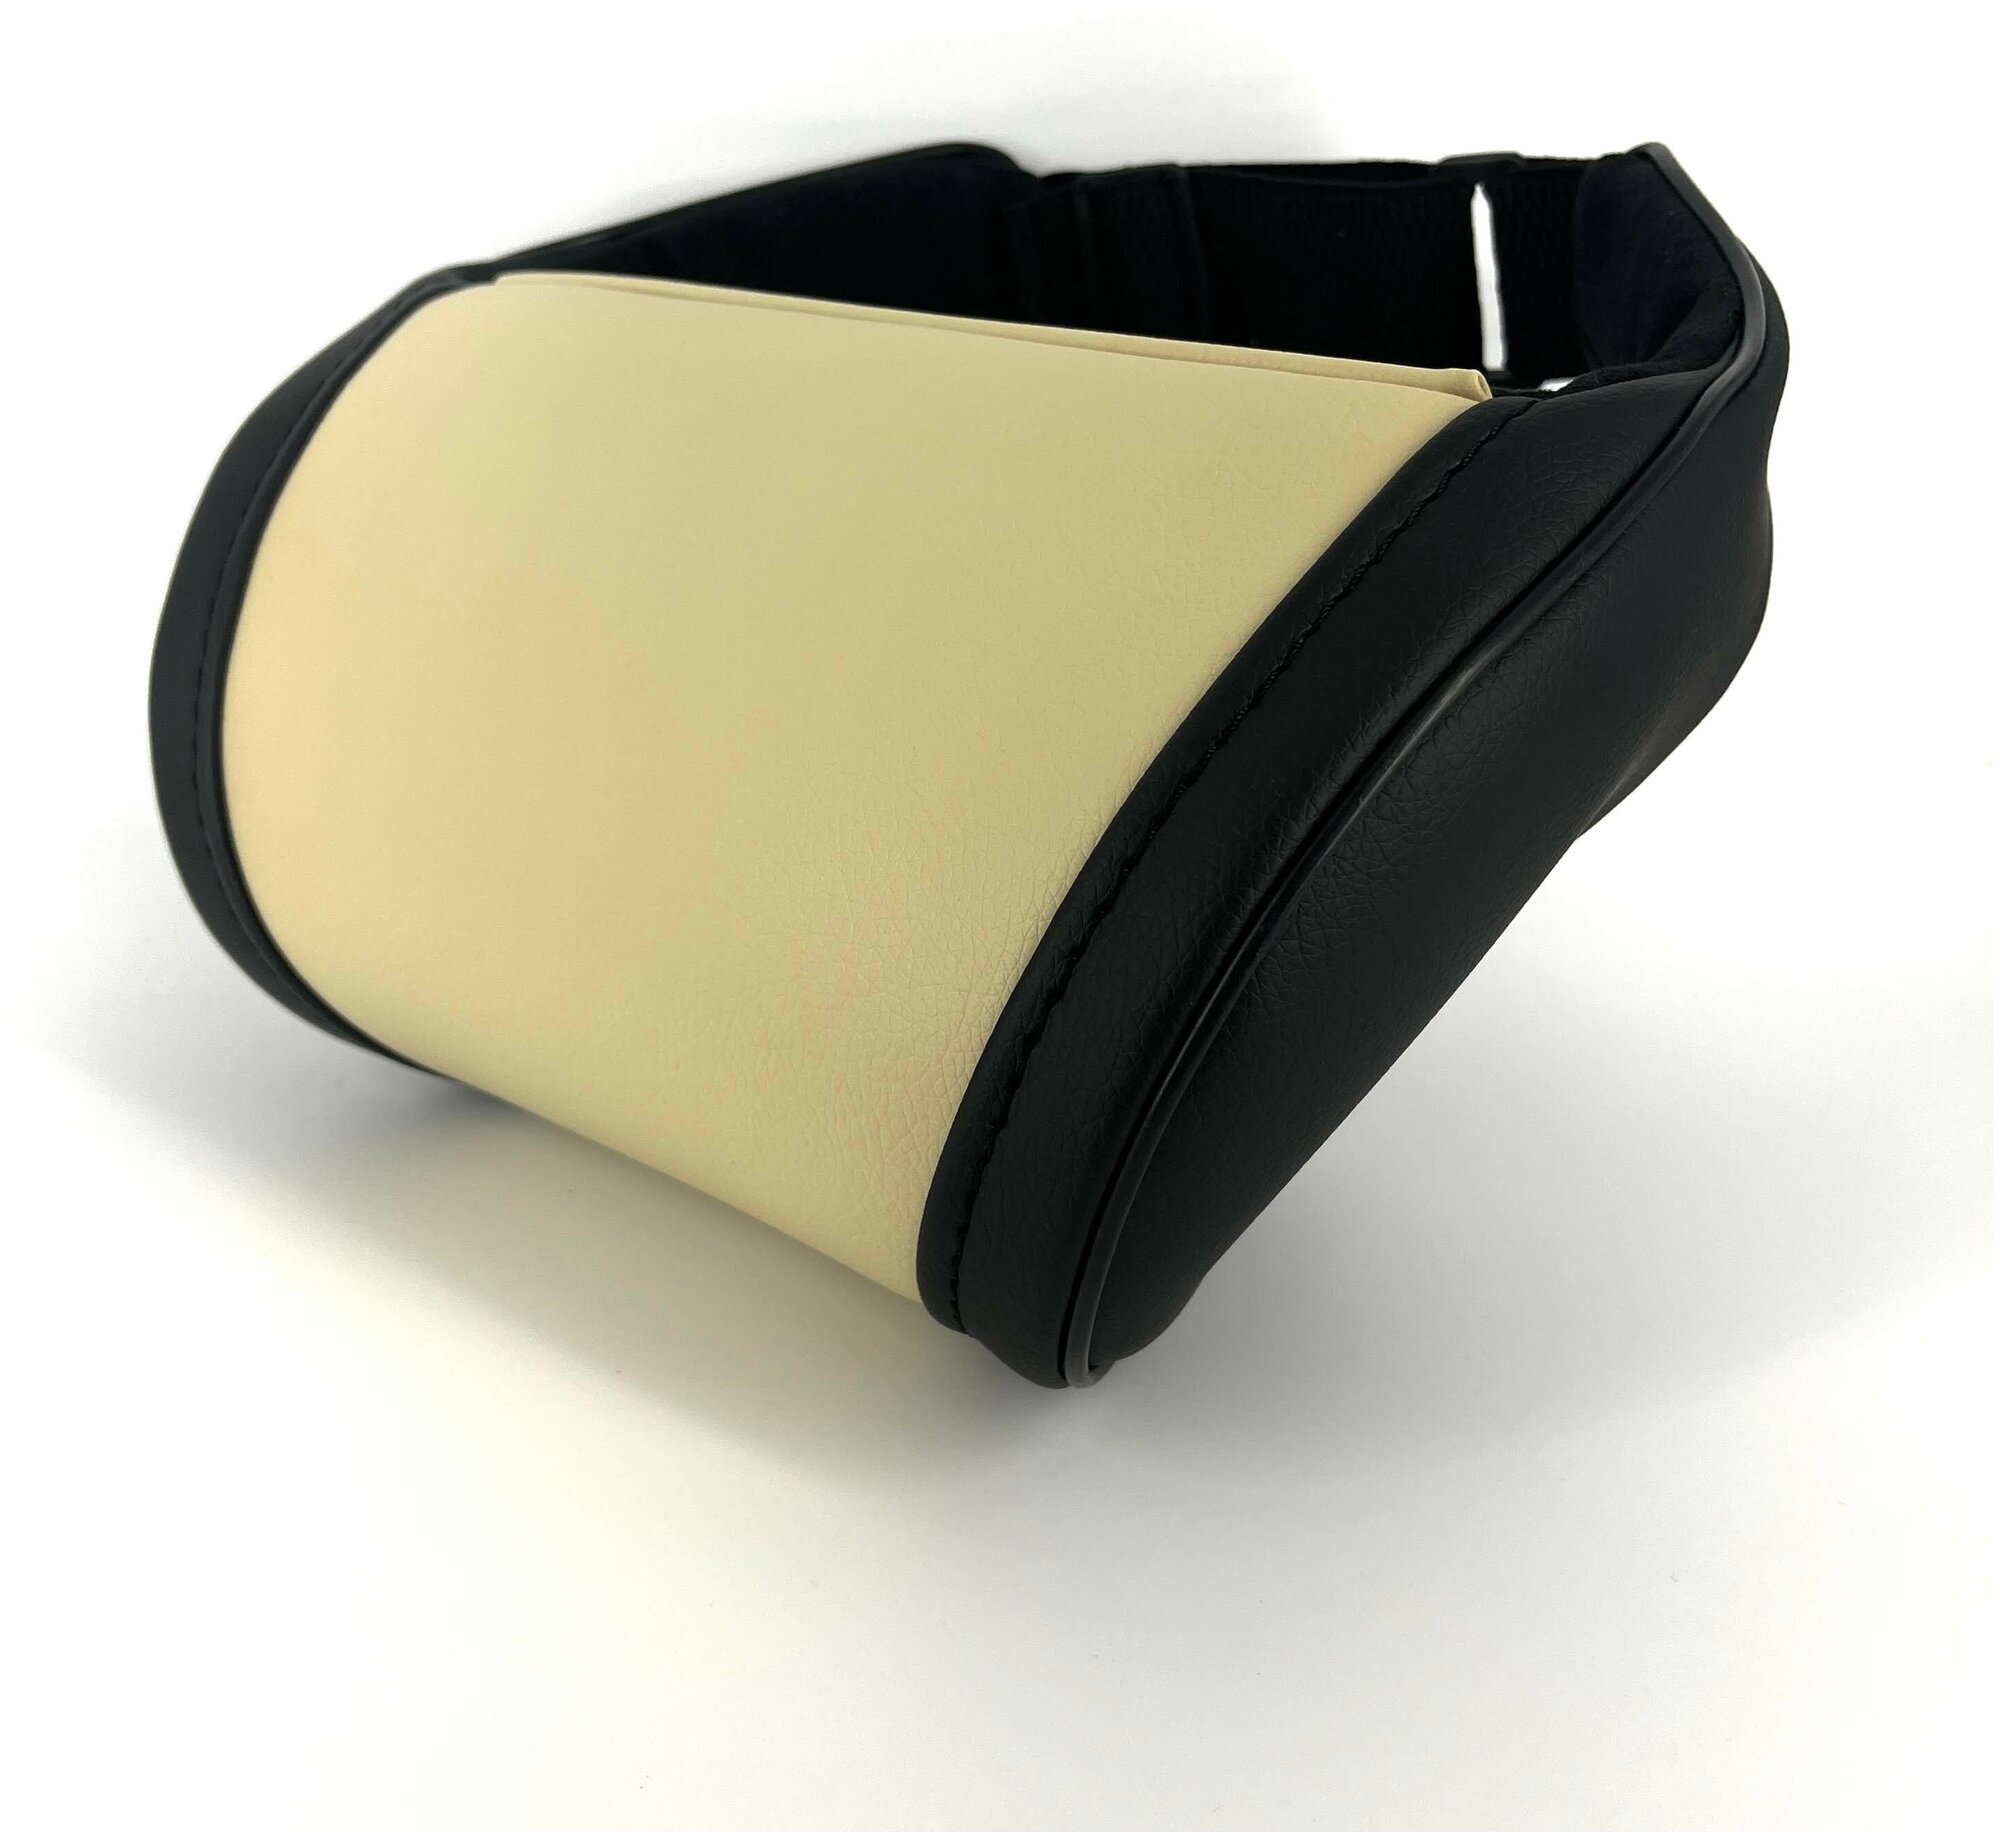 Бежевая автомобильная ортопедическая подушка для шеи на подголовник на сиденье с боками черного цвета. Экокожа премиум класса.